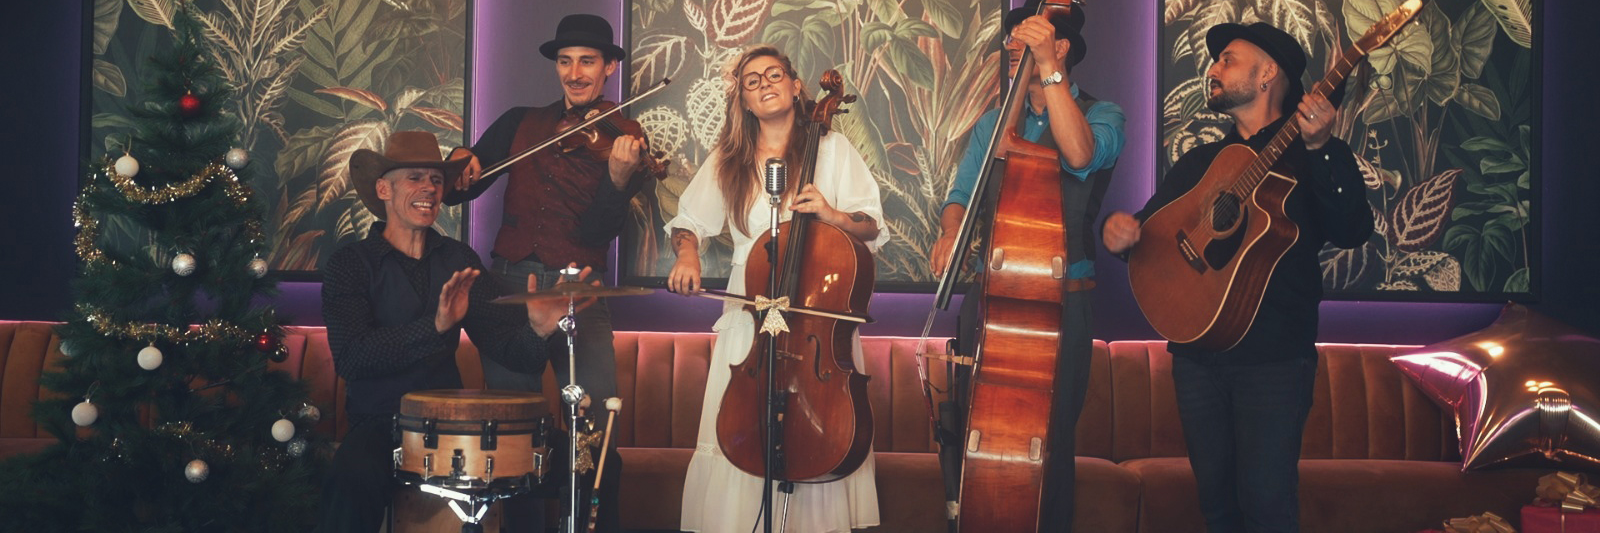 Mélanie Petrarca & The Acoustic Band, musicien Chanteur en représentation à Isère - photo de couverture n° 1